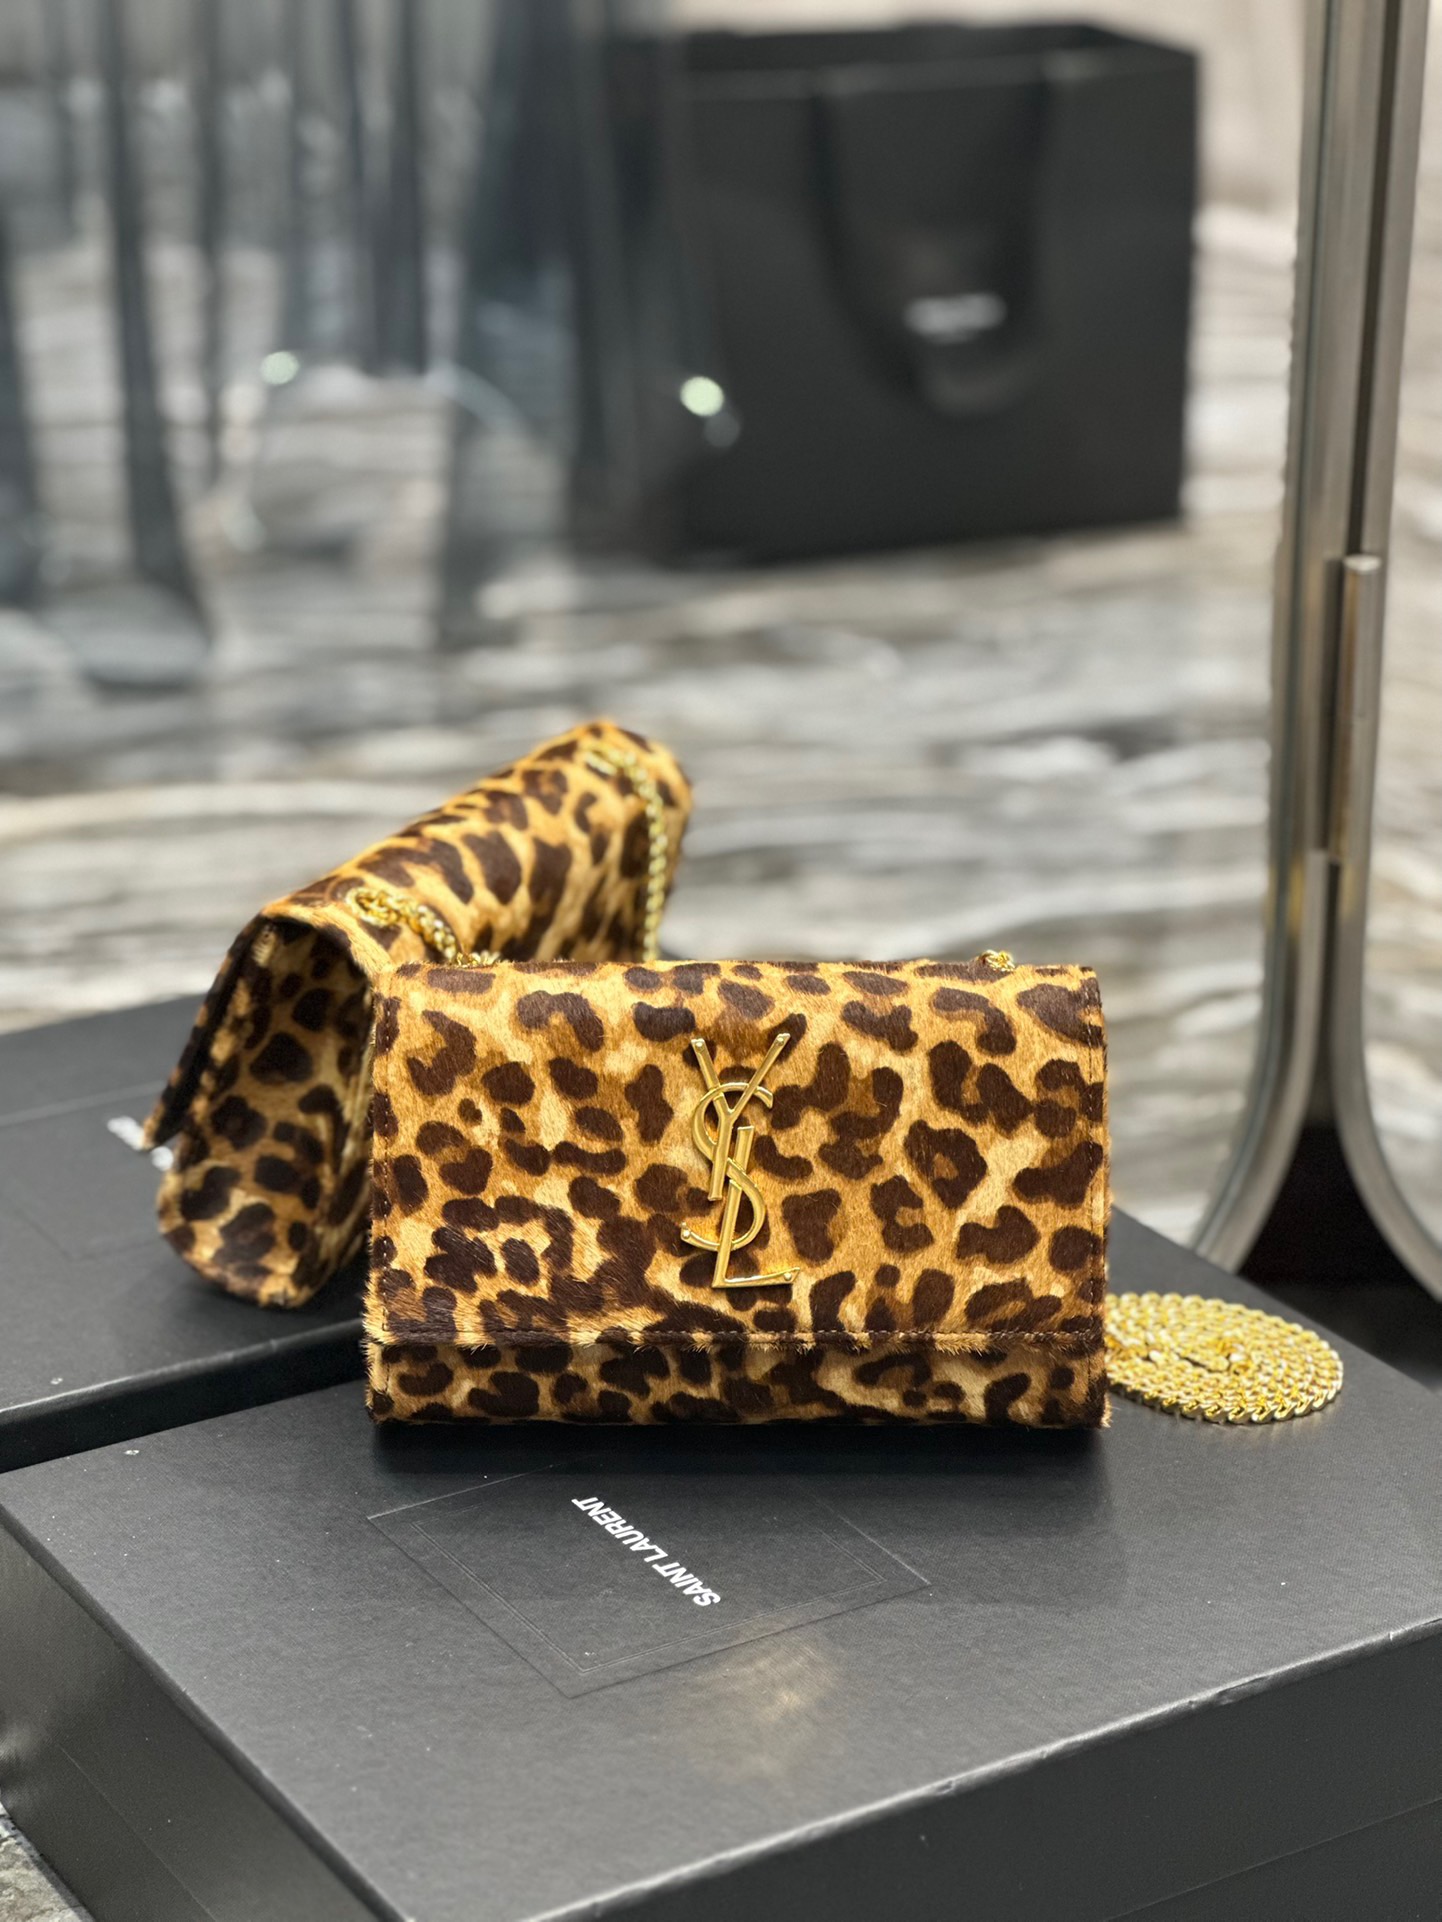 YSL Saint Laurent leopard print shoulder bag # 268785, cheap YSL Satchels, only $159!